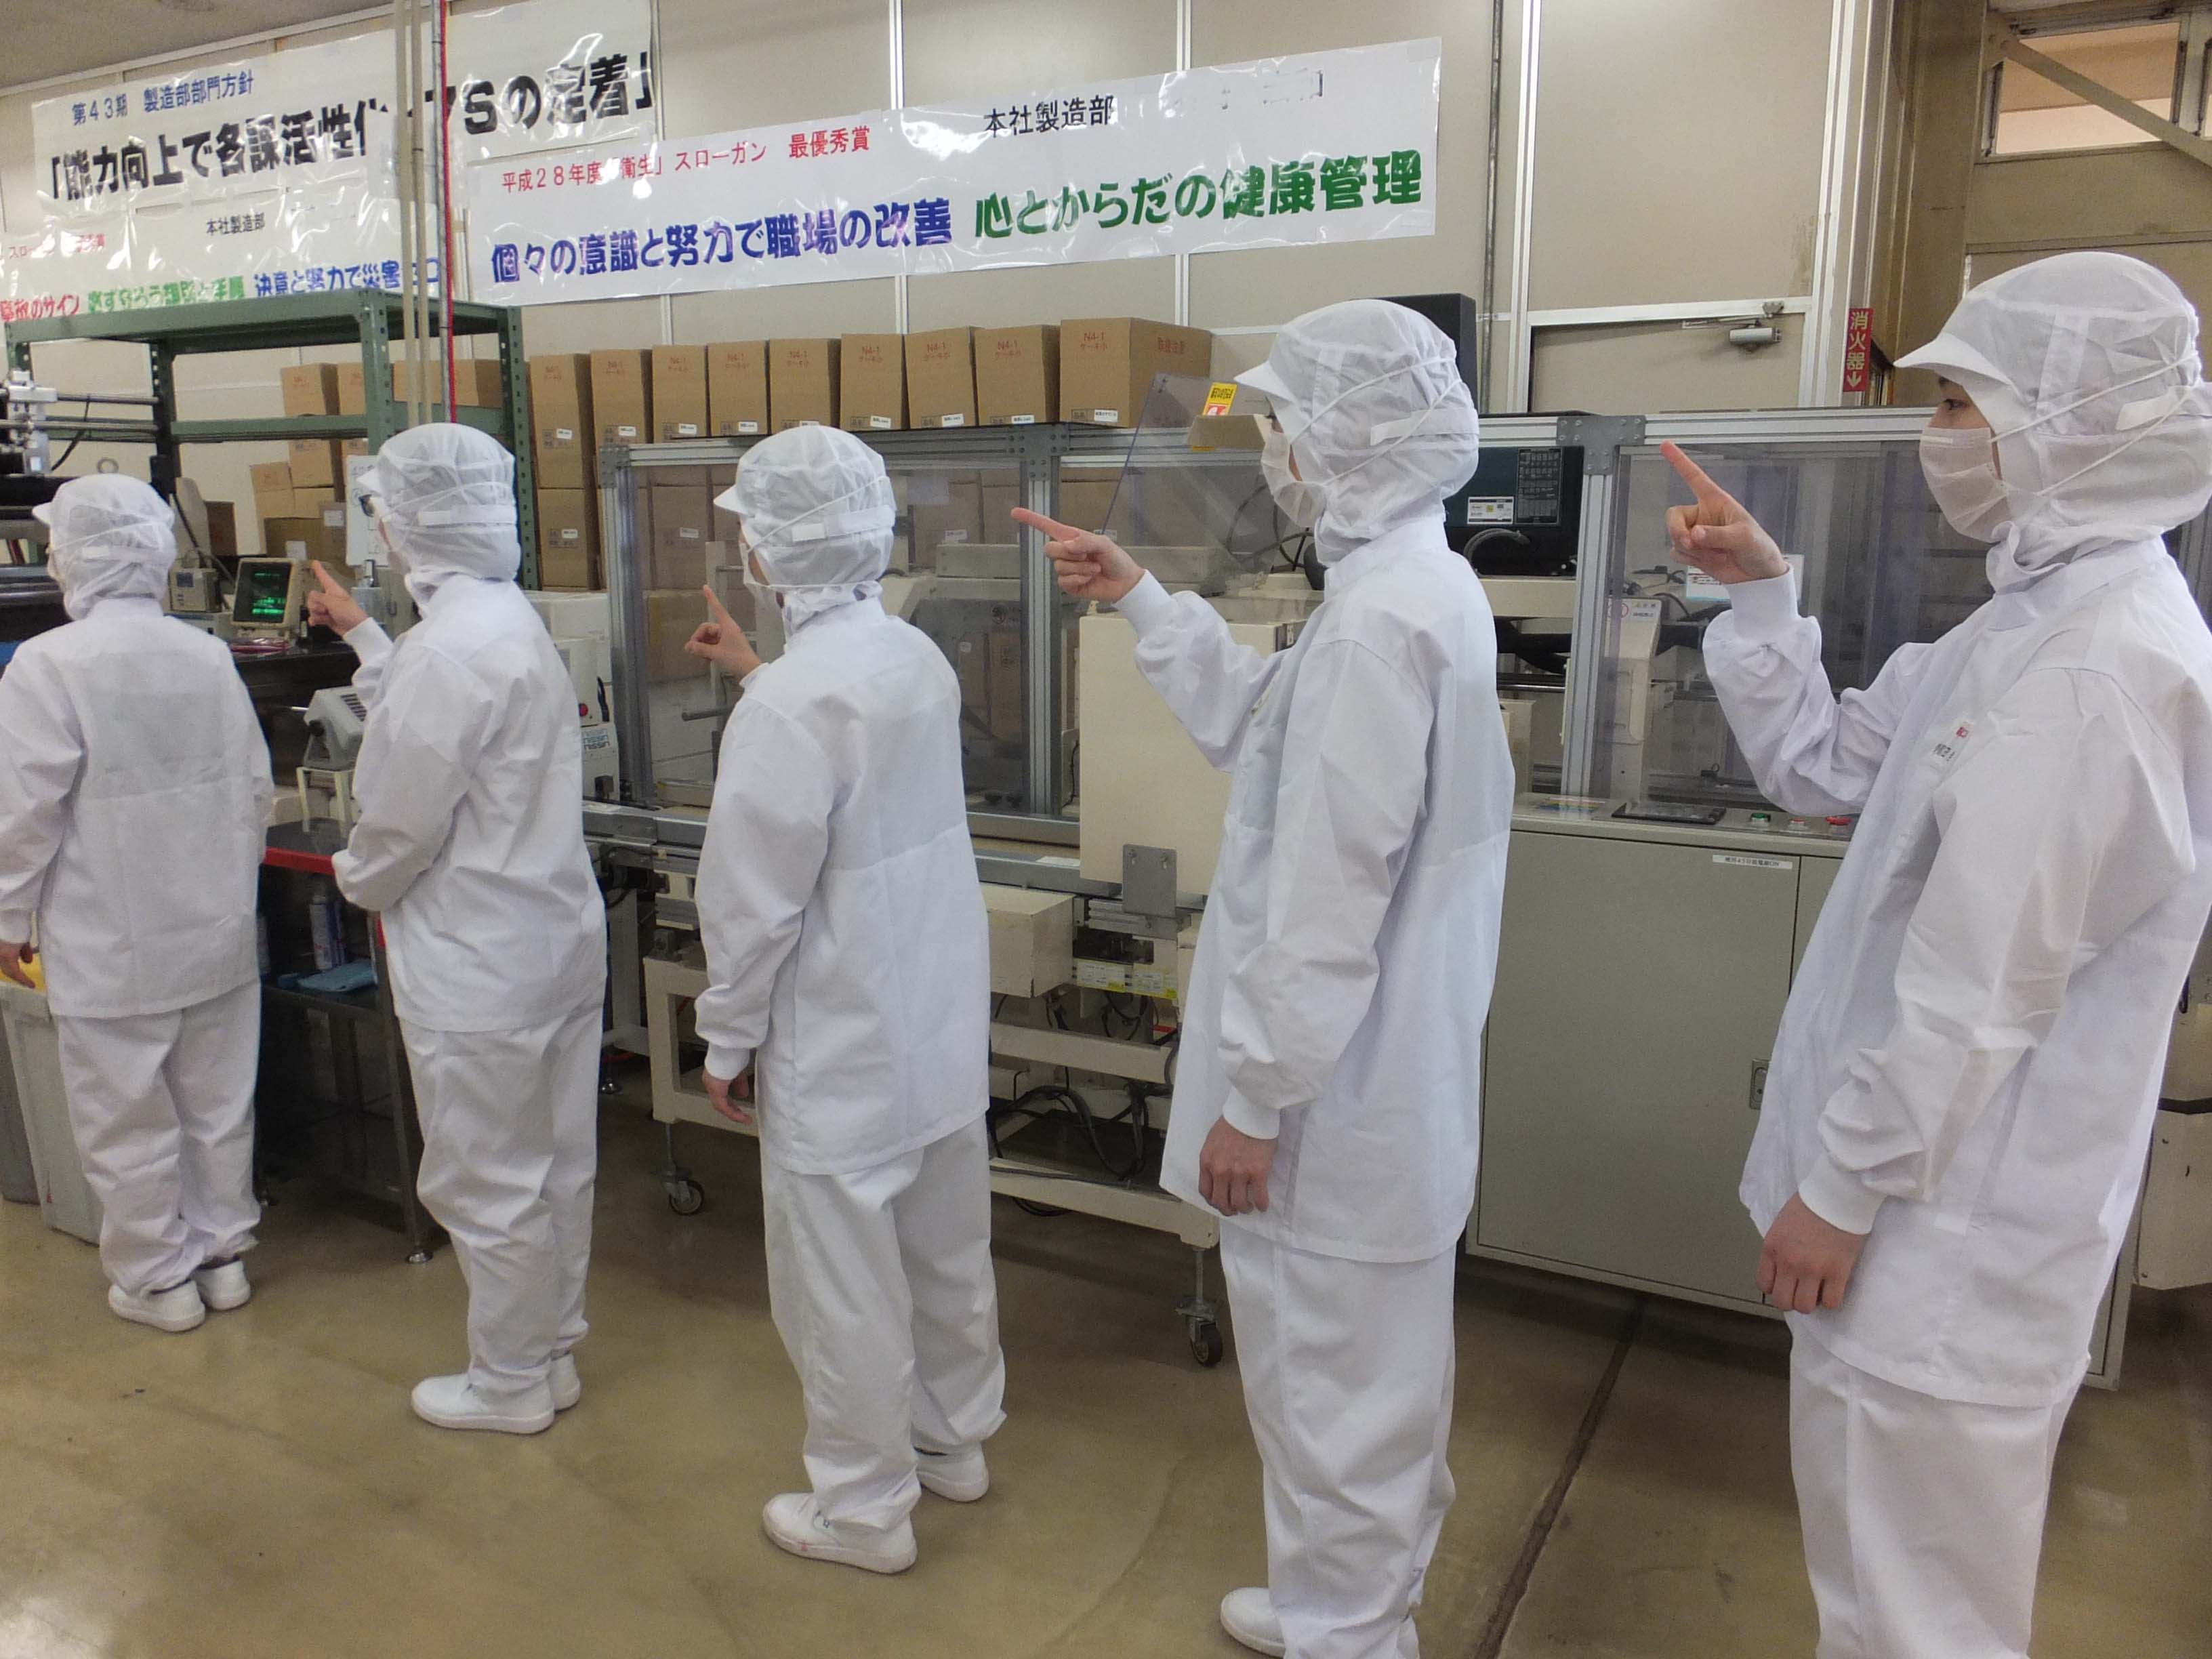 đơn hàng chế biến thực phẩm lương cao tại Gifu